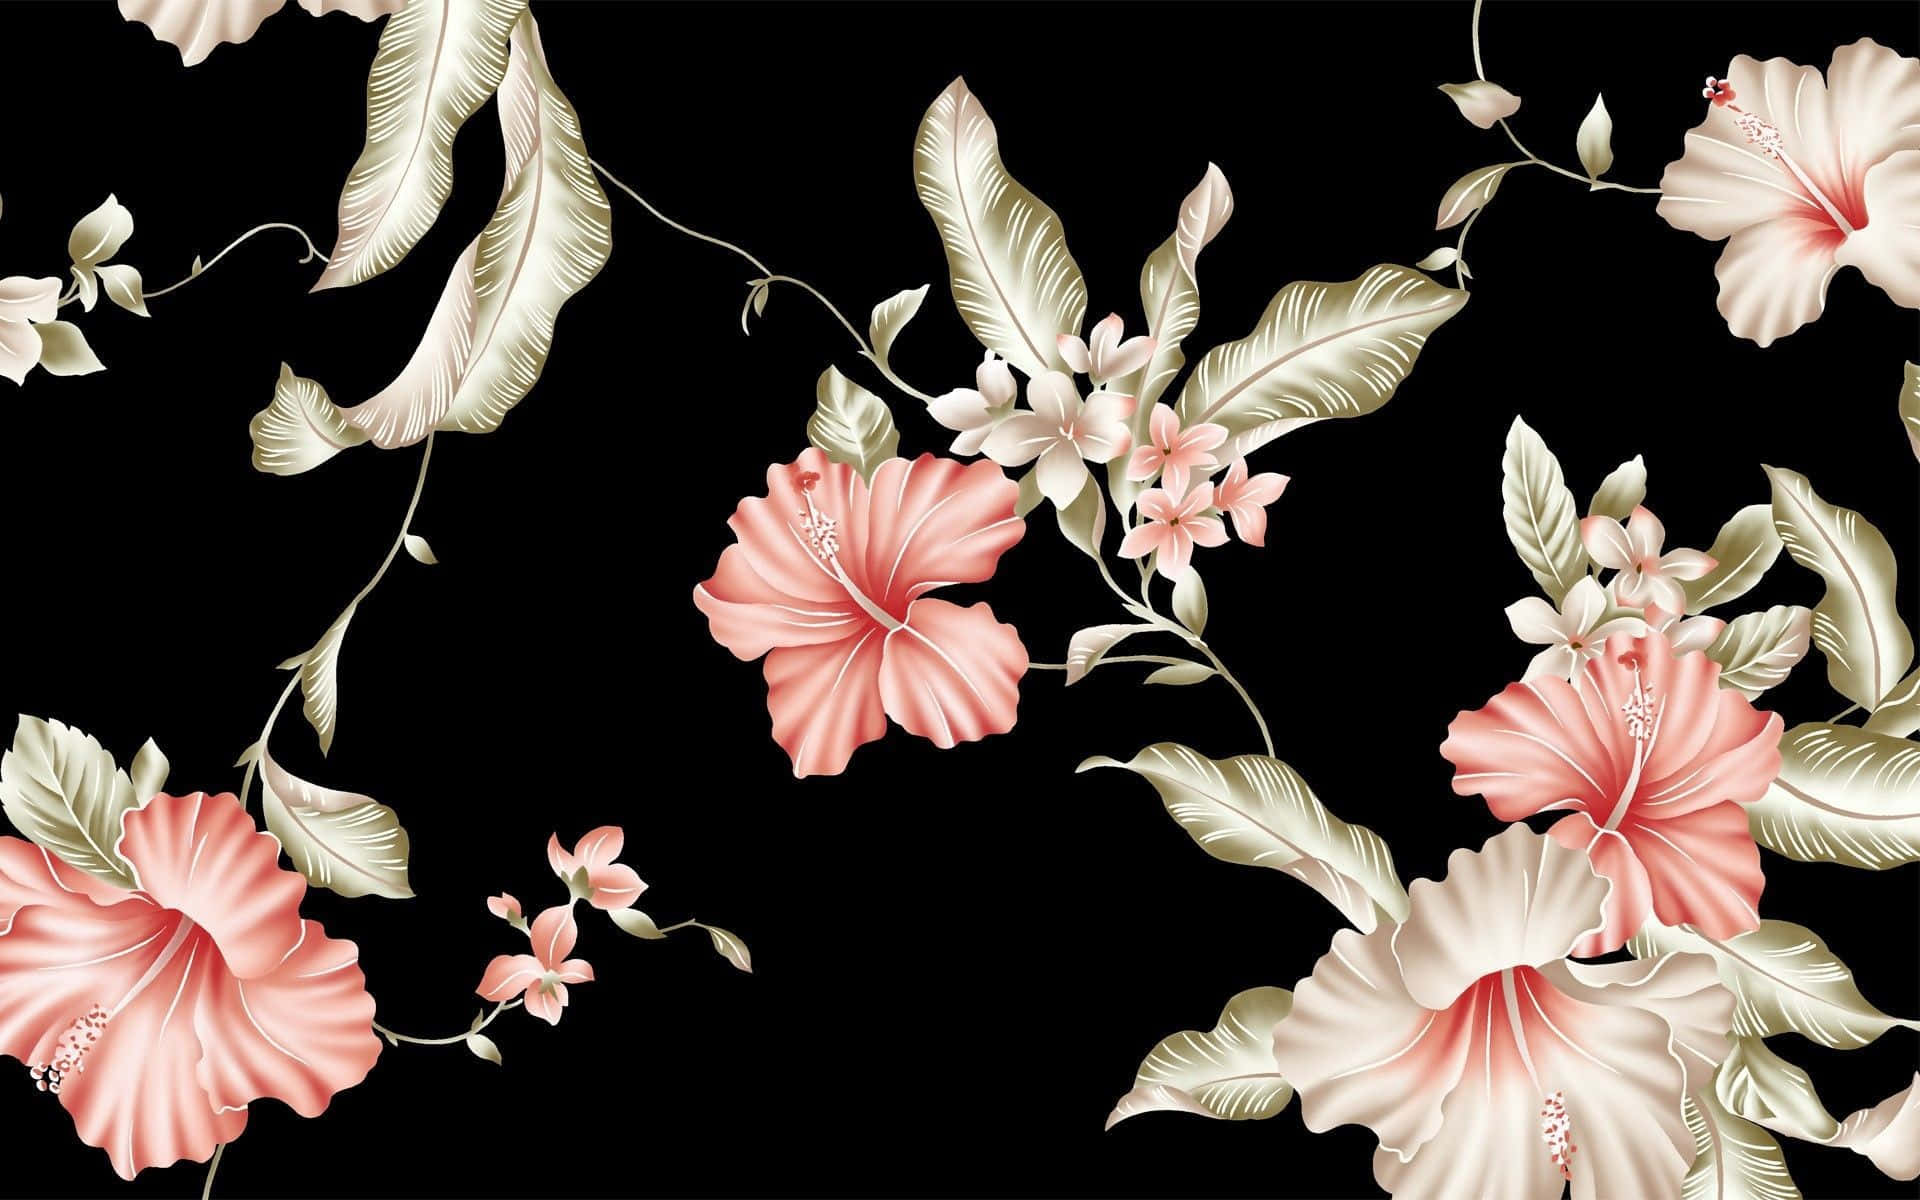 Enmönstrad Bakgrund I Svart Och Rosa Blommor (a Patterned Background In Black And Pink Flowers)